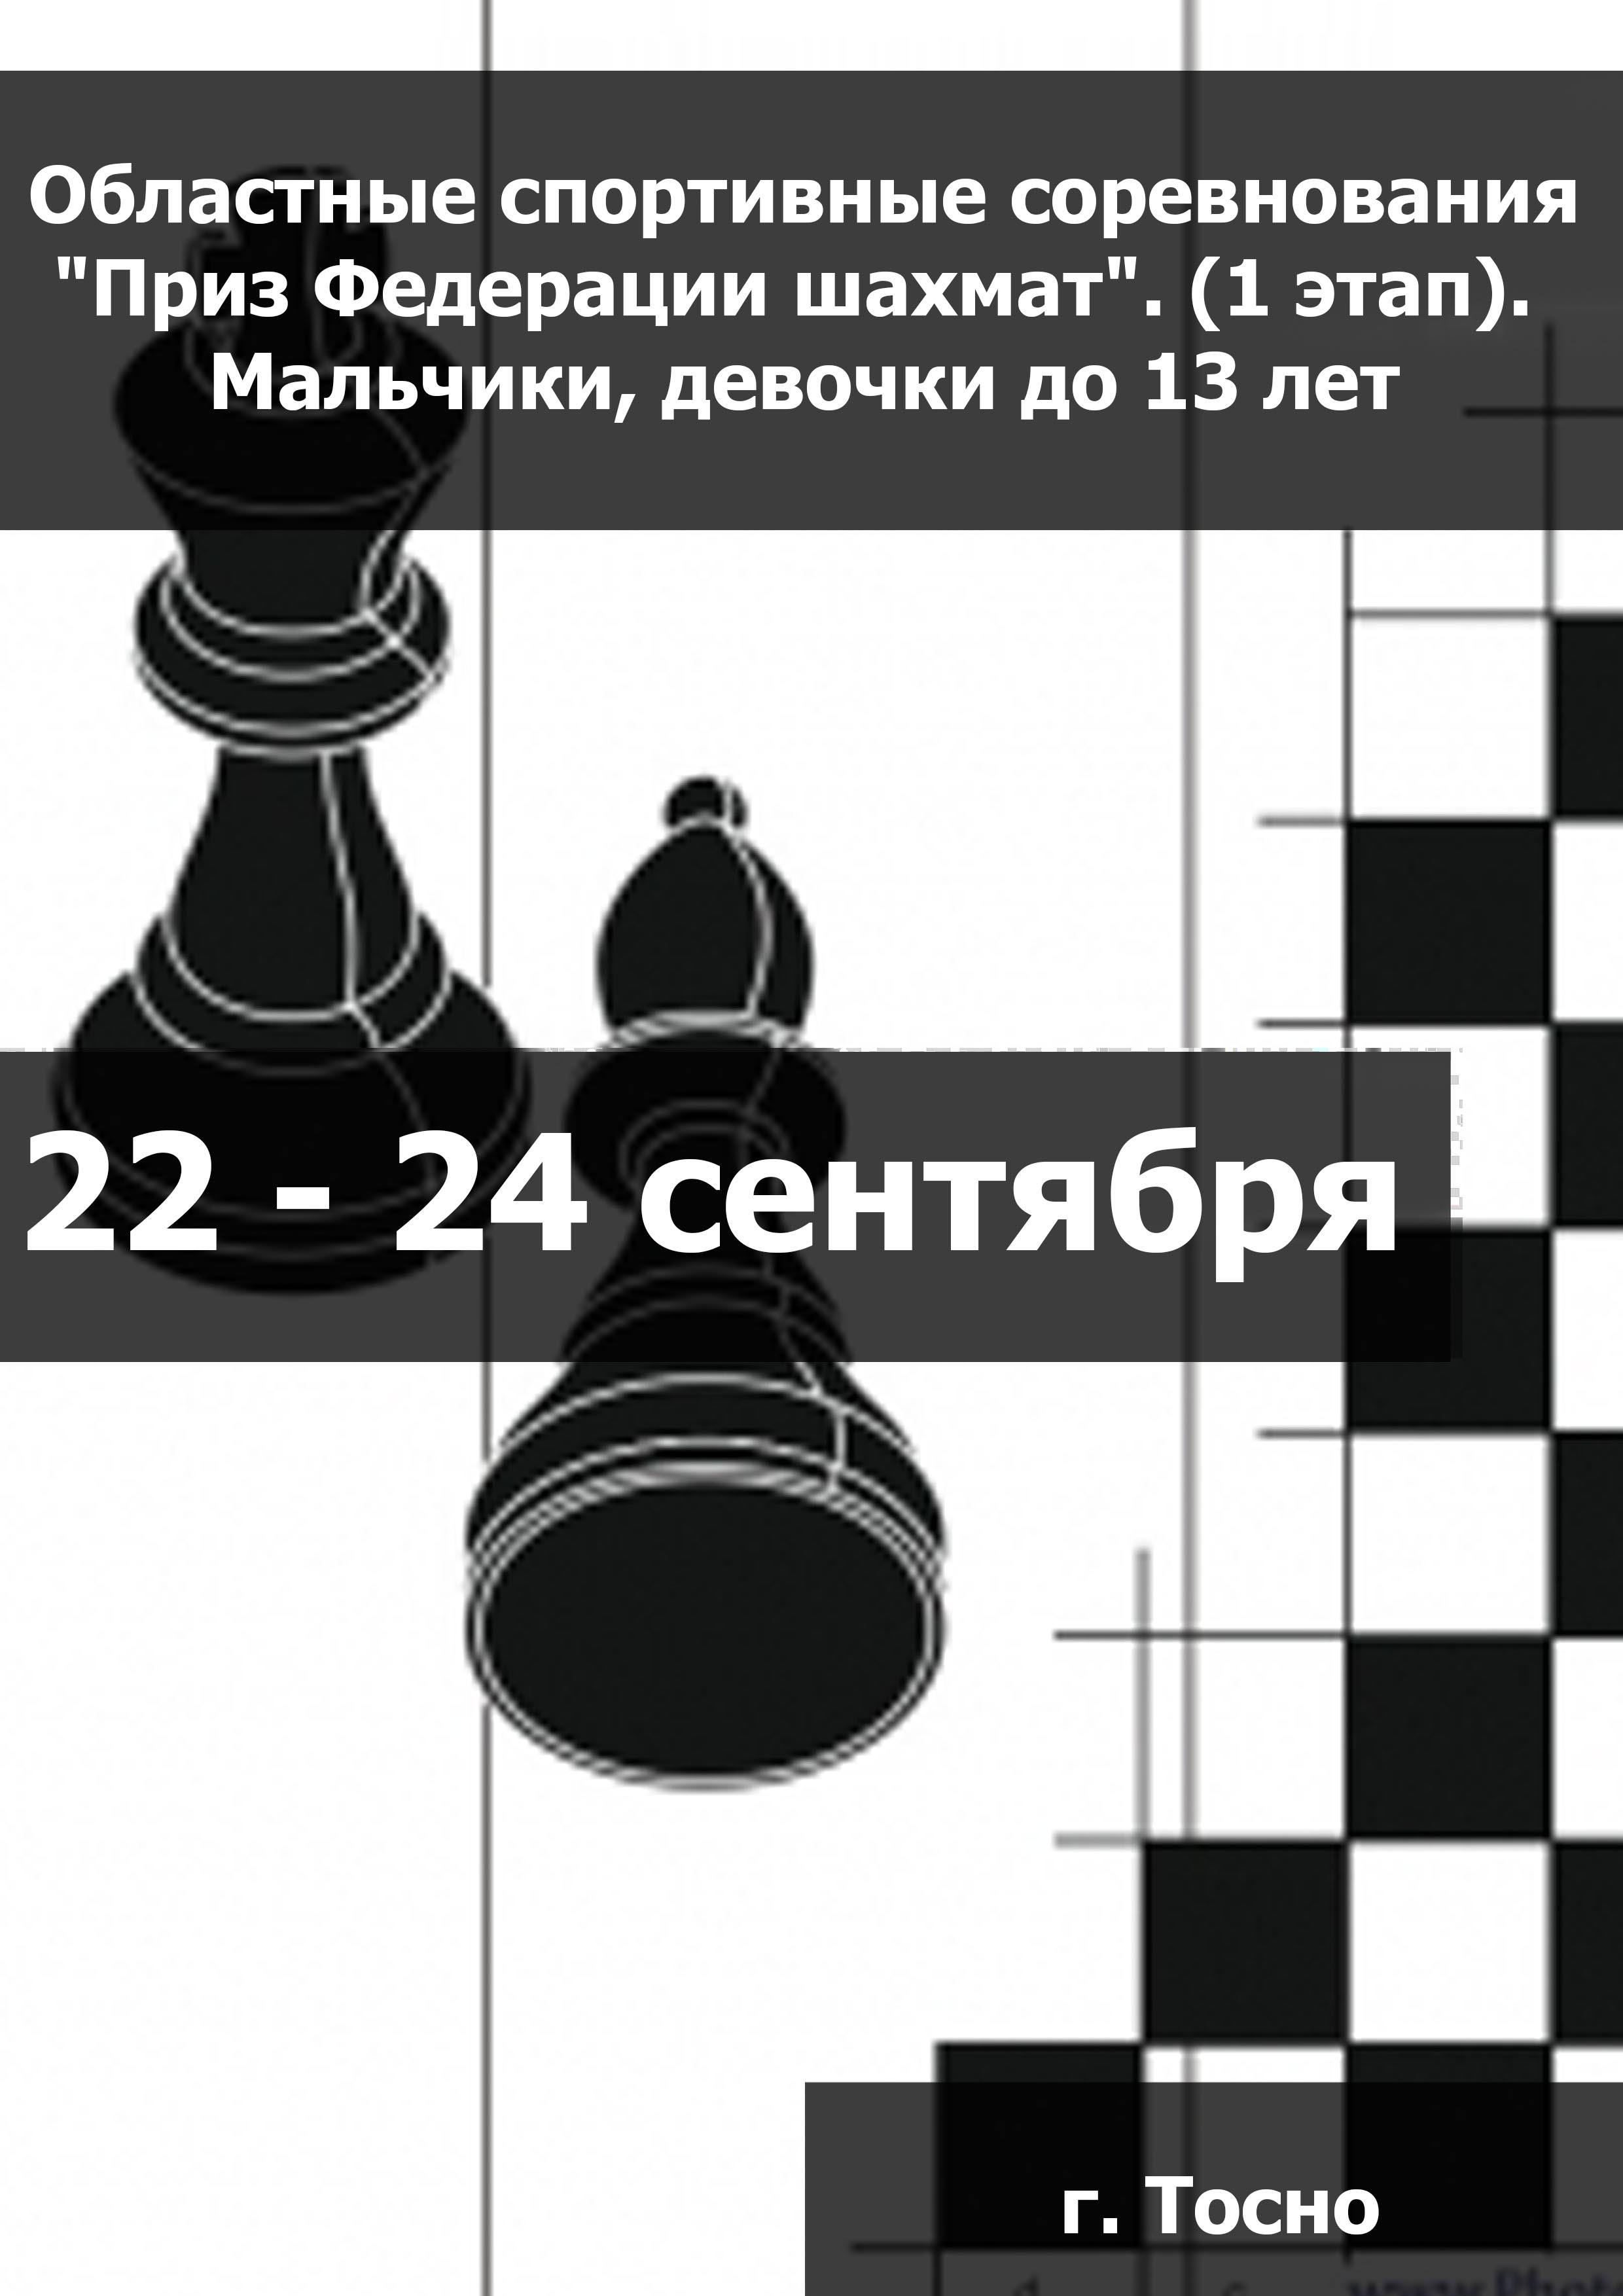 Областные спортивные соревнования "Приз Федерации шахмат". (1 этап).  Мальчики, девочки до 13 лет  22 сентября 2023 года 